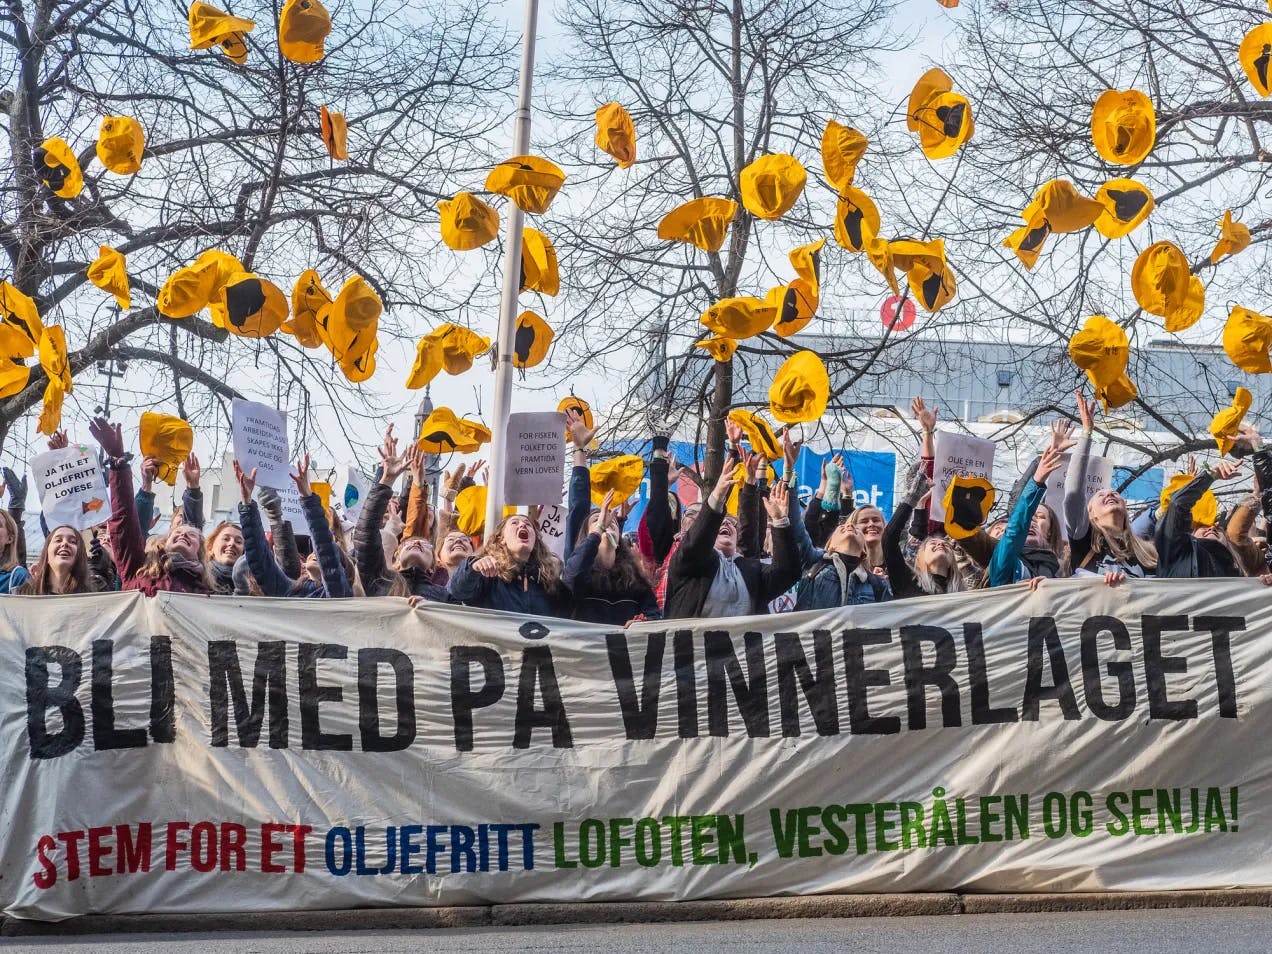 Mange ungdommer står bak et kjempestort banner hvor det står "Bli med på vinnerlaget. Stem for et oljefritt Lofoten, Vesterålen og Senja". Alle har de hver sin gule sydvest som de kaster opp i lufta i jubel.